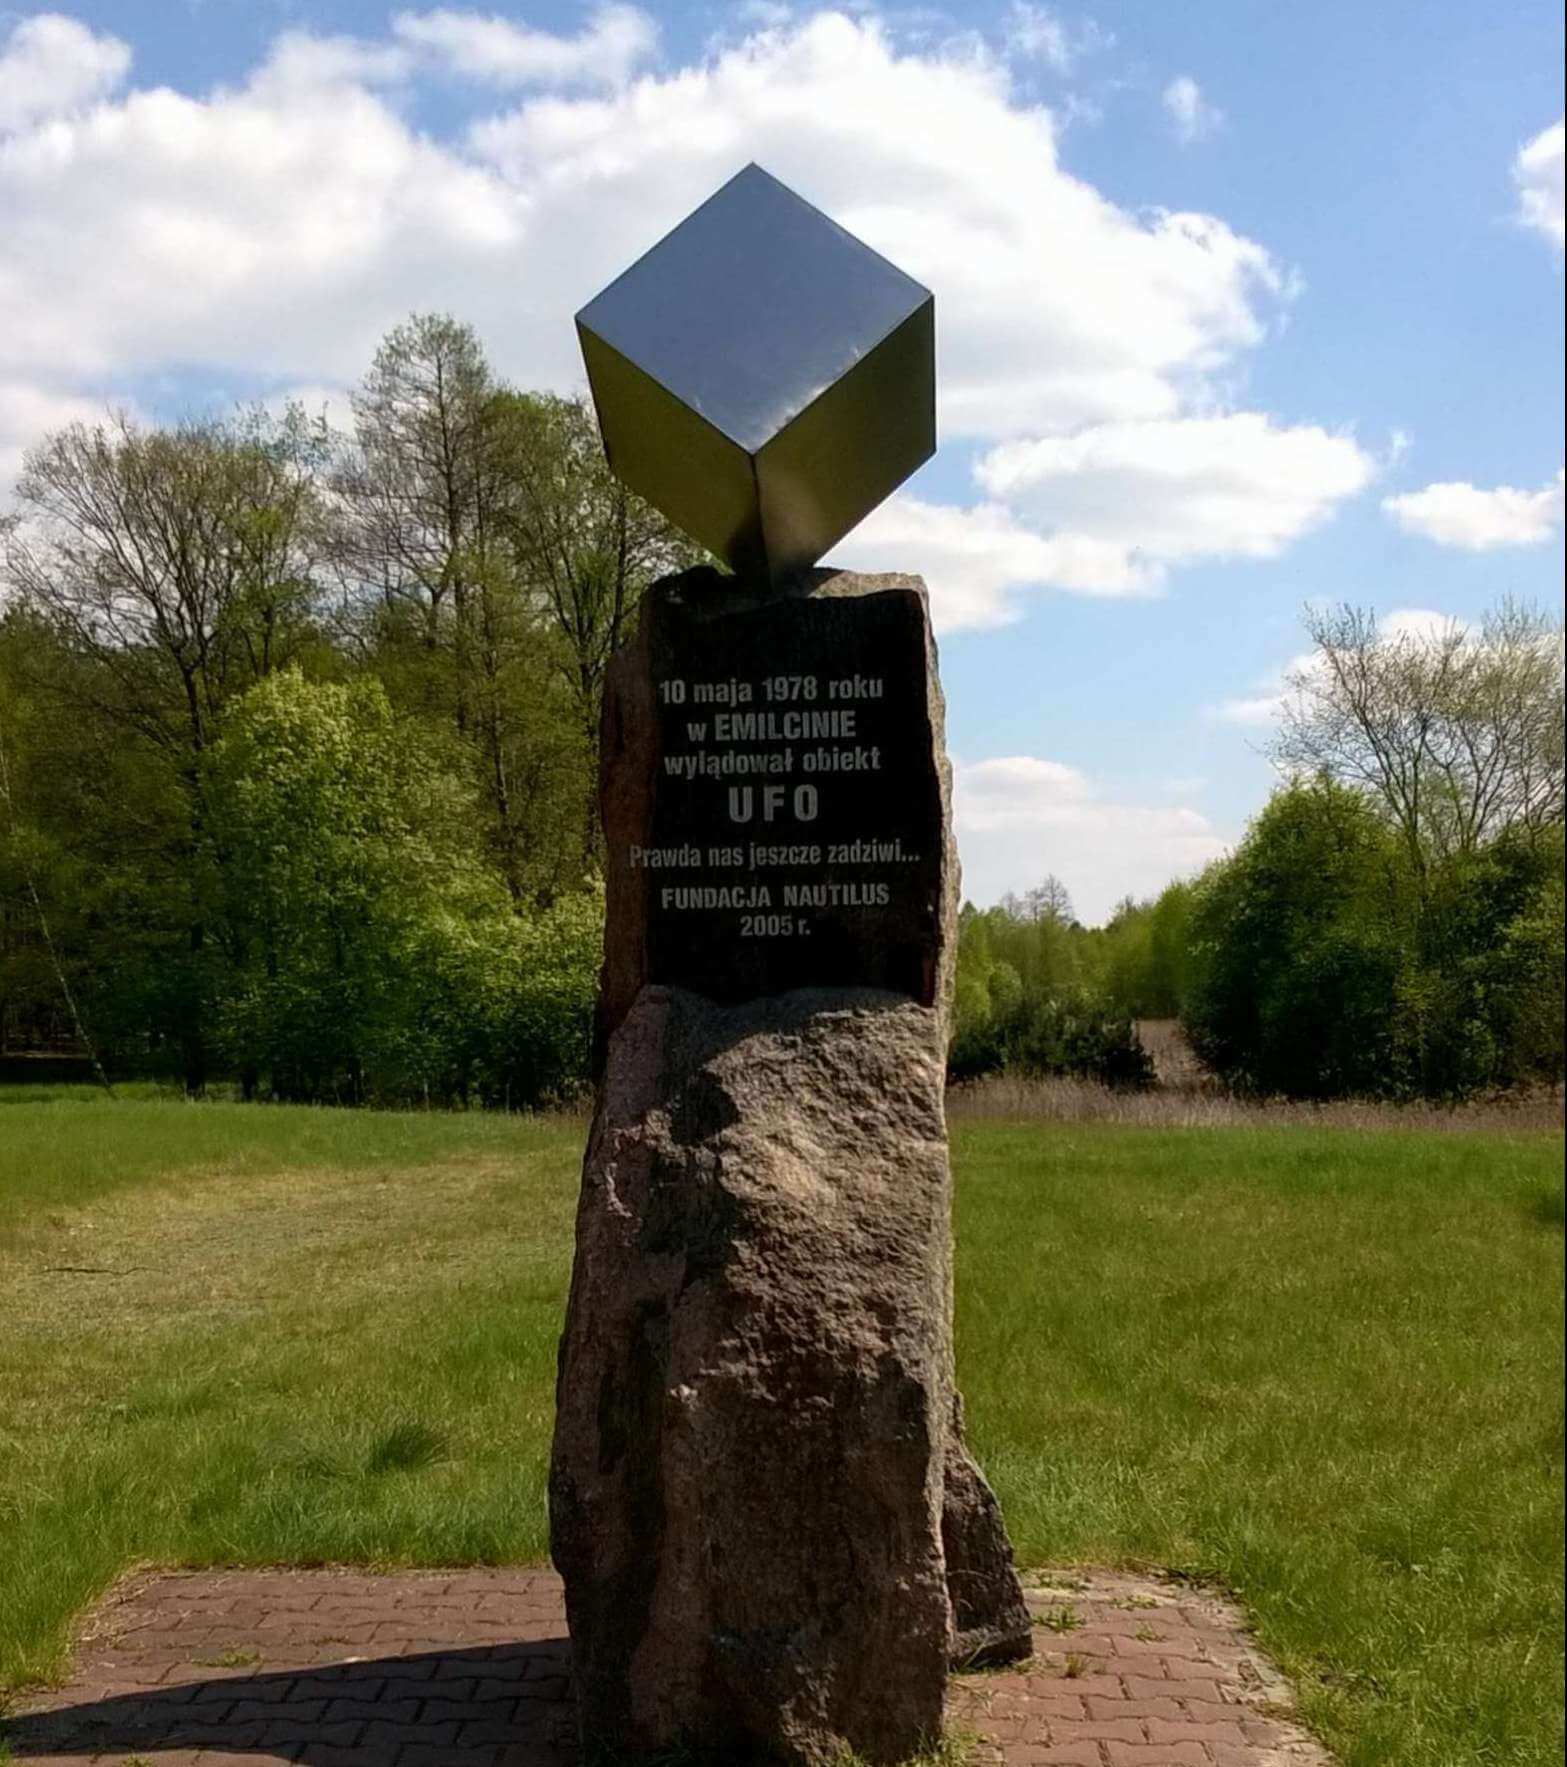 Pomnik upamiętniający tzw. zdarzenie w Emilicinie czyli lądowanie UFO